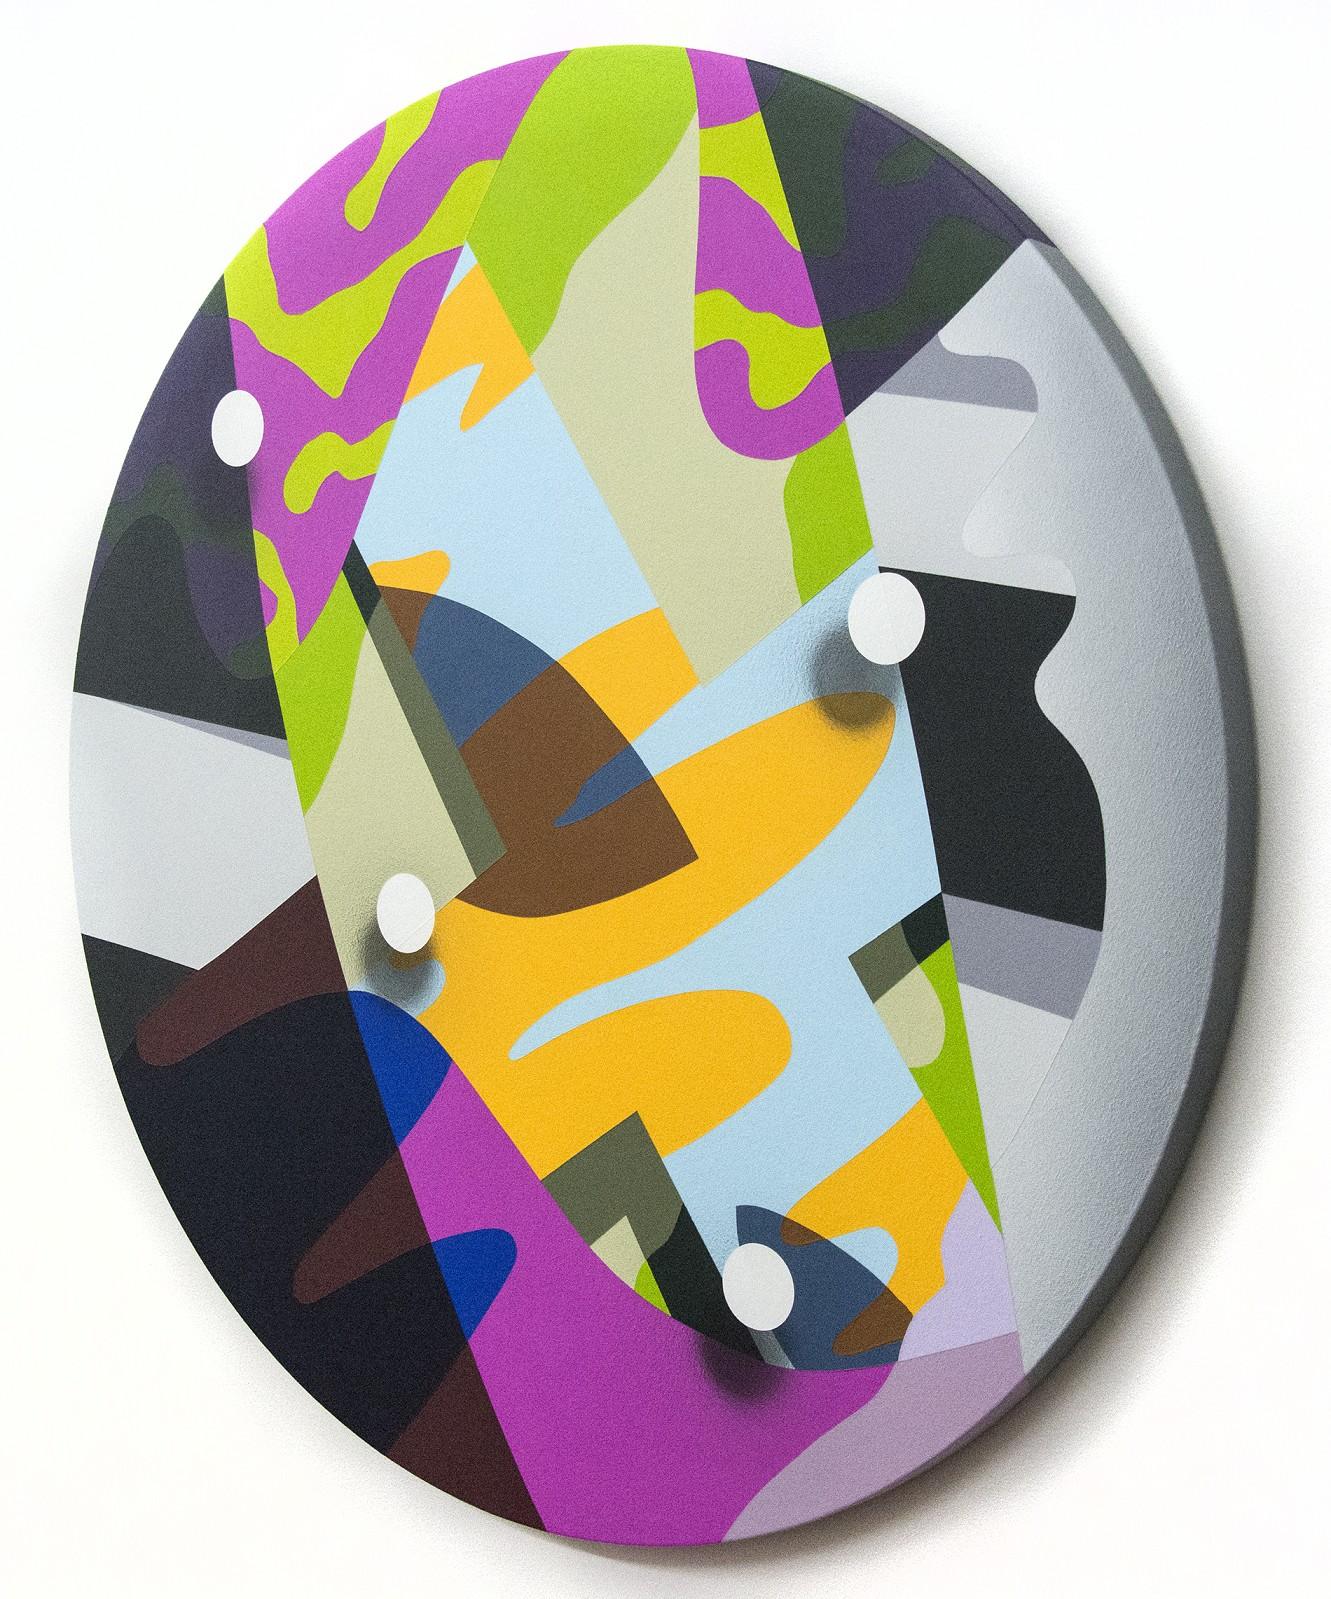 fluence - grafisch, orange, rosa, grün, geometrisch, tondo, Acryl auf Platte – Painting von Sylvain Louis-Seize